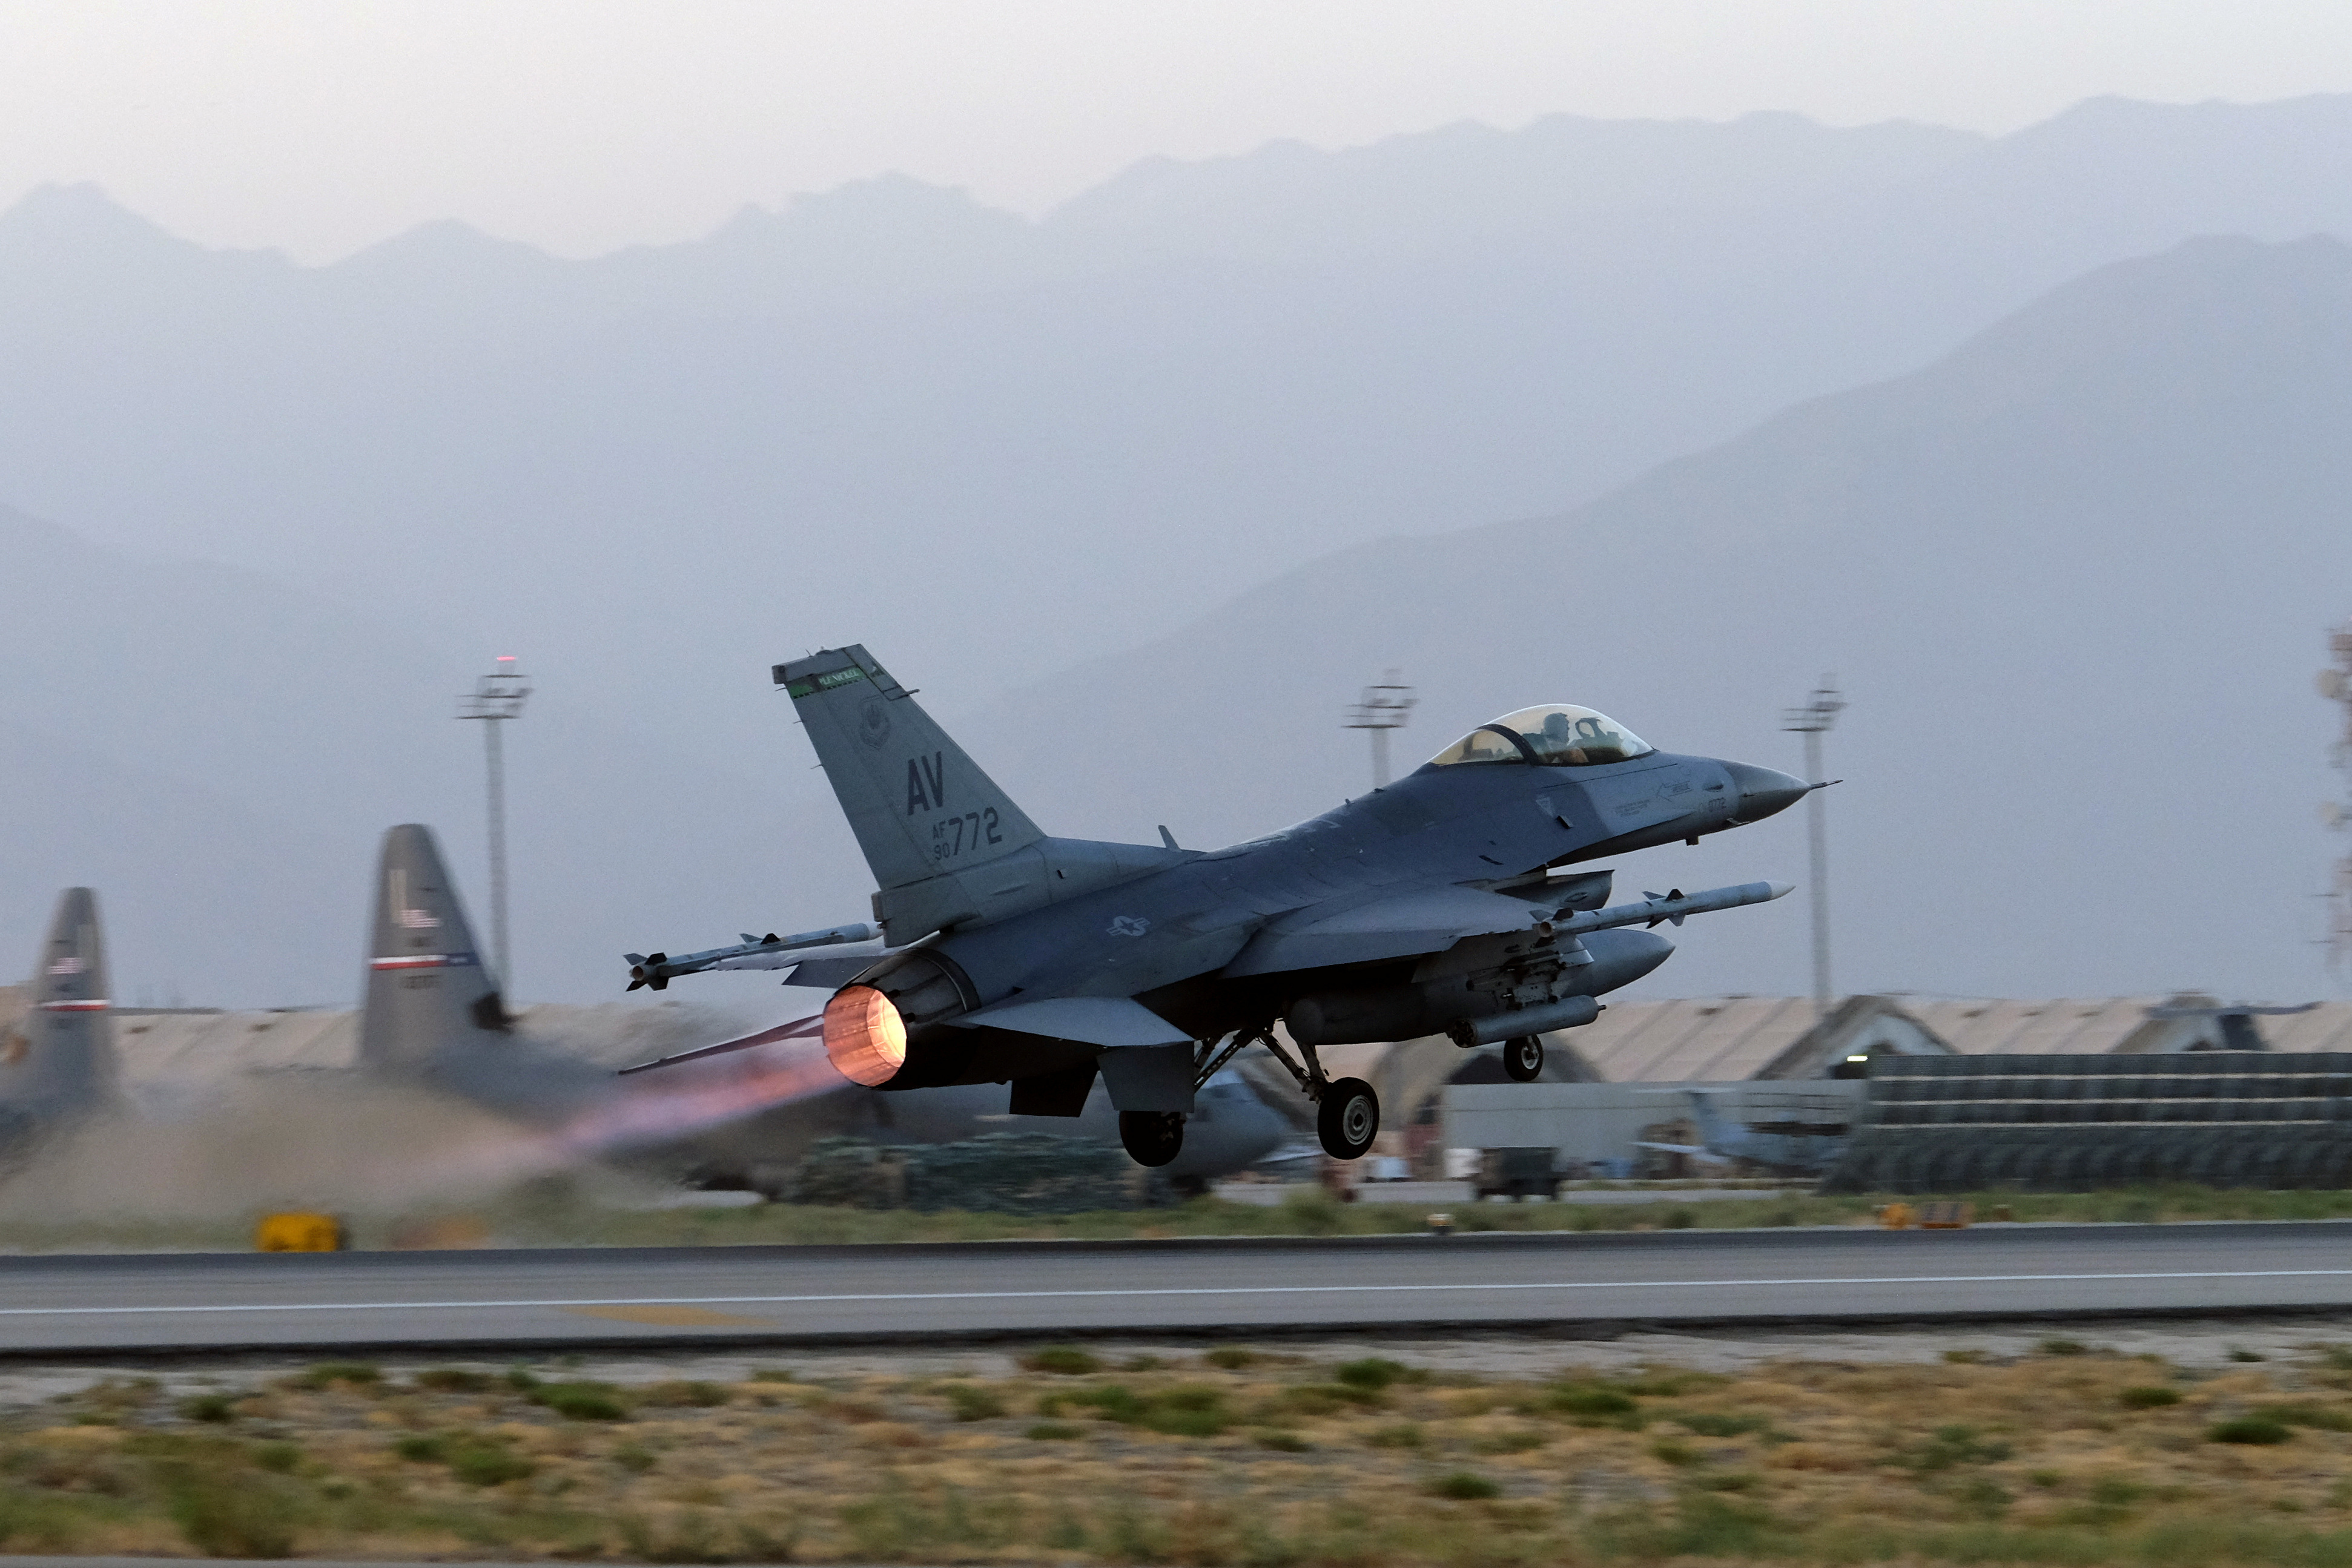 Máy bay F-16 Fighting Falcon của Không quân Hoa Kỳ cất cánh cho một nhiệm vụ vào ban đêm tại Sân bay Bagram